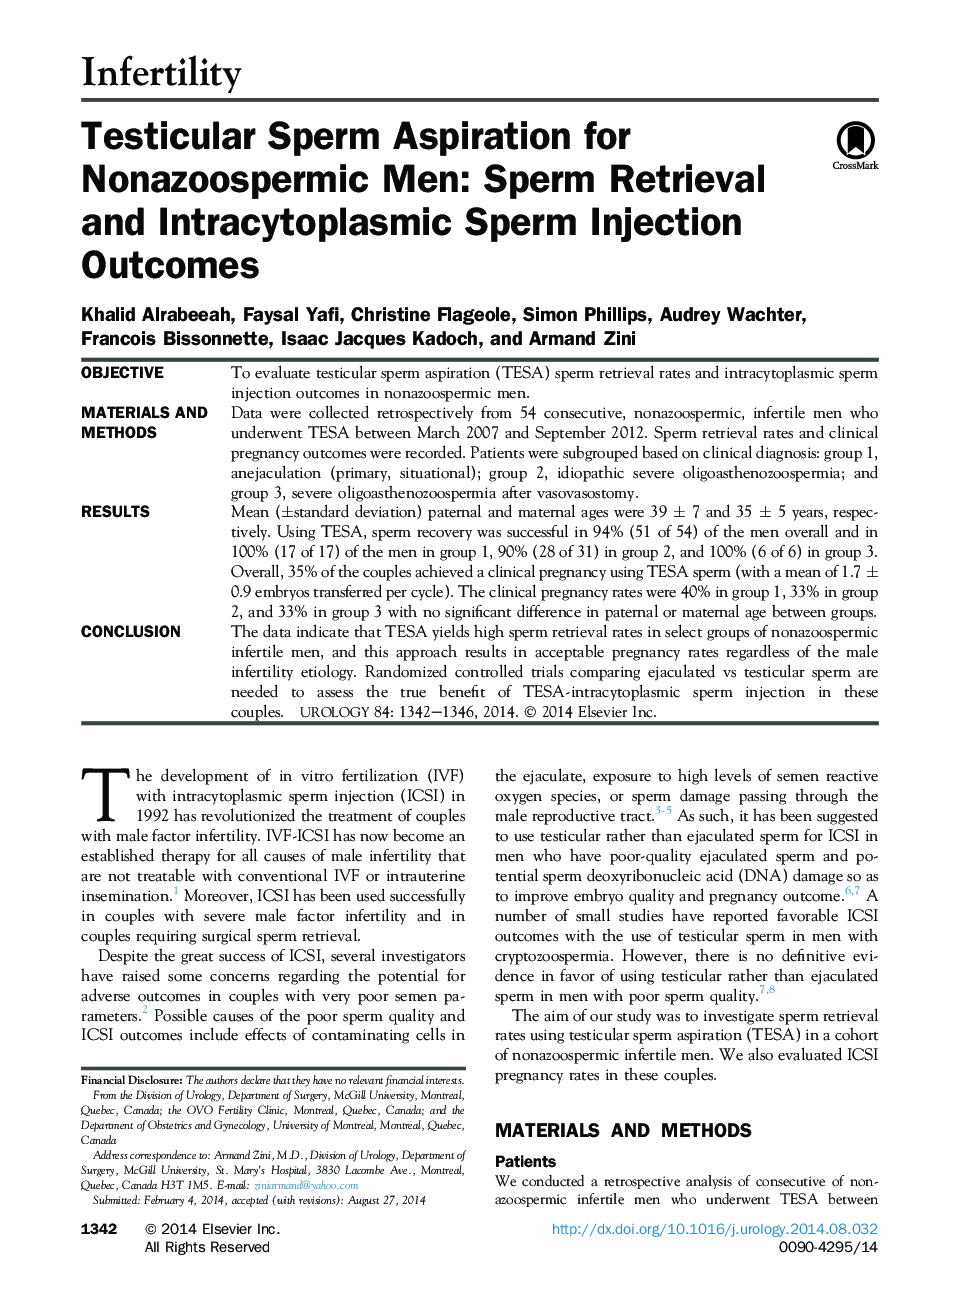 اسپرسکسی اسپرم مردانه برای مردان غیر مغز و اعصاب: نتایج اسپرم و اسپرم درون سیتوپلاسمی 